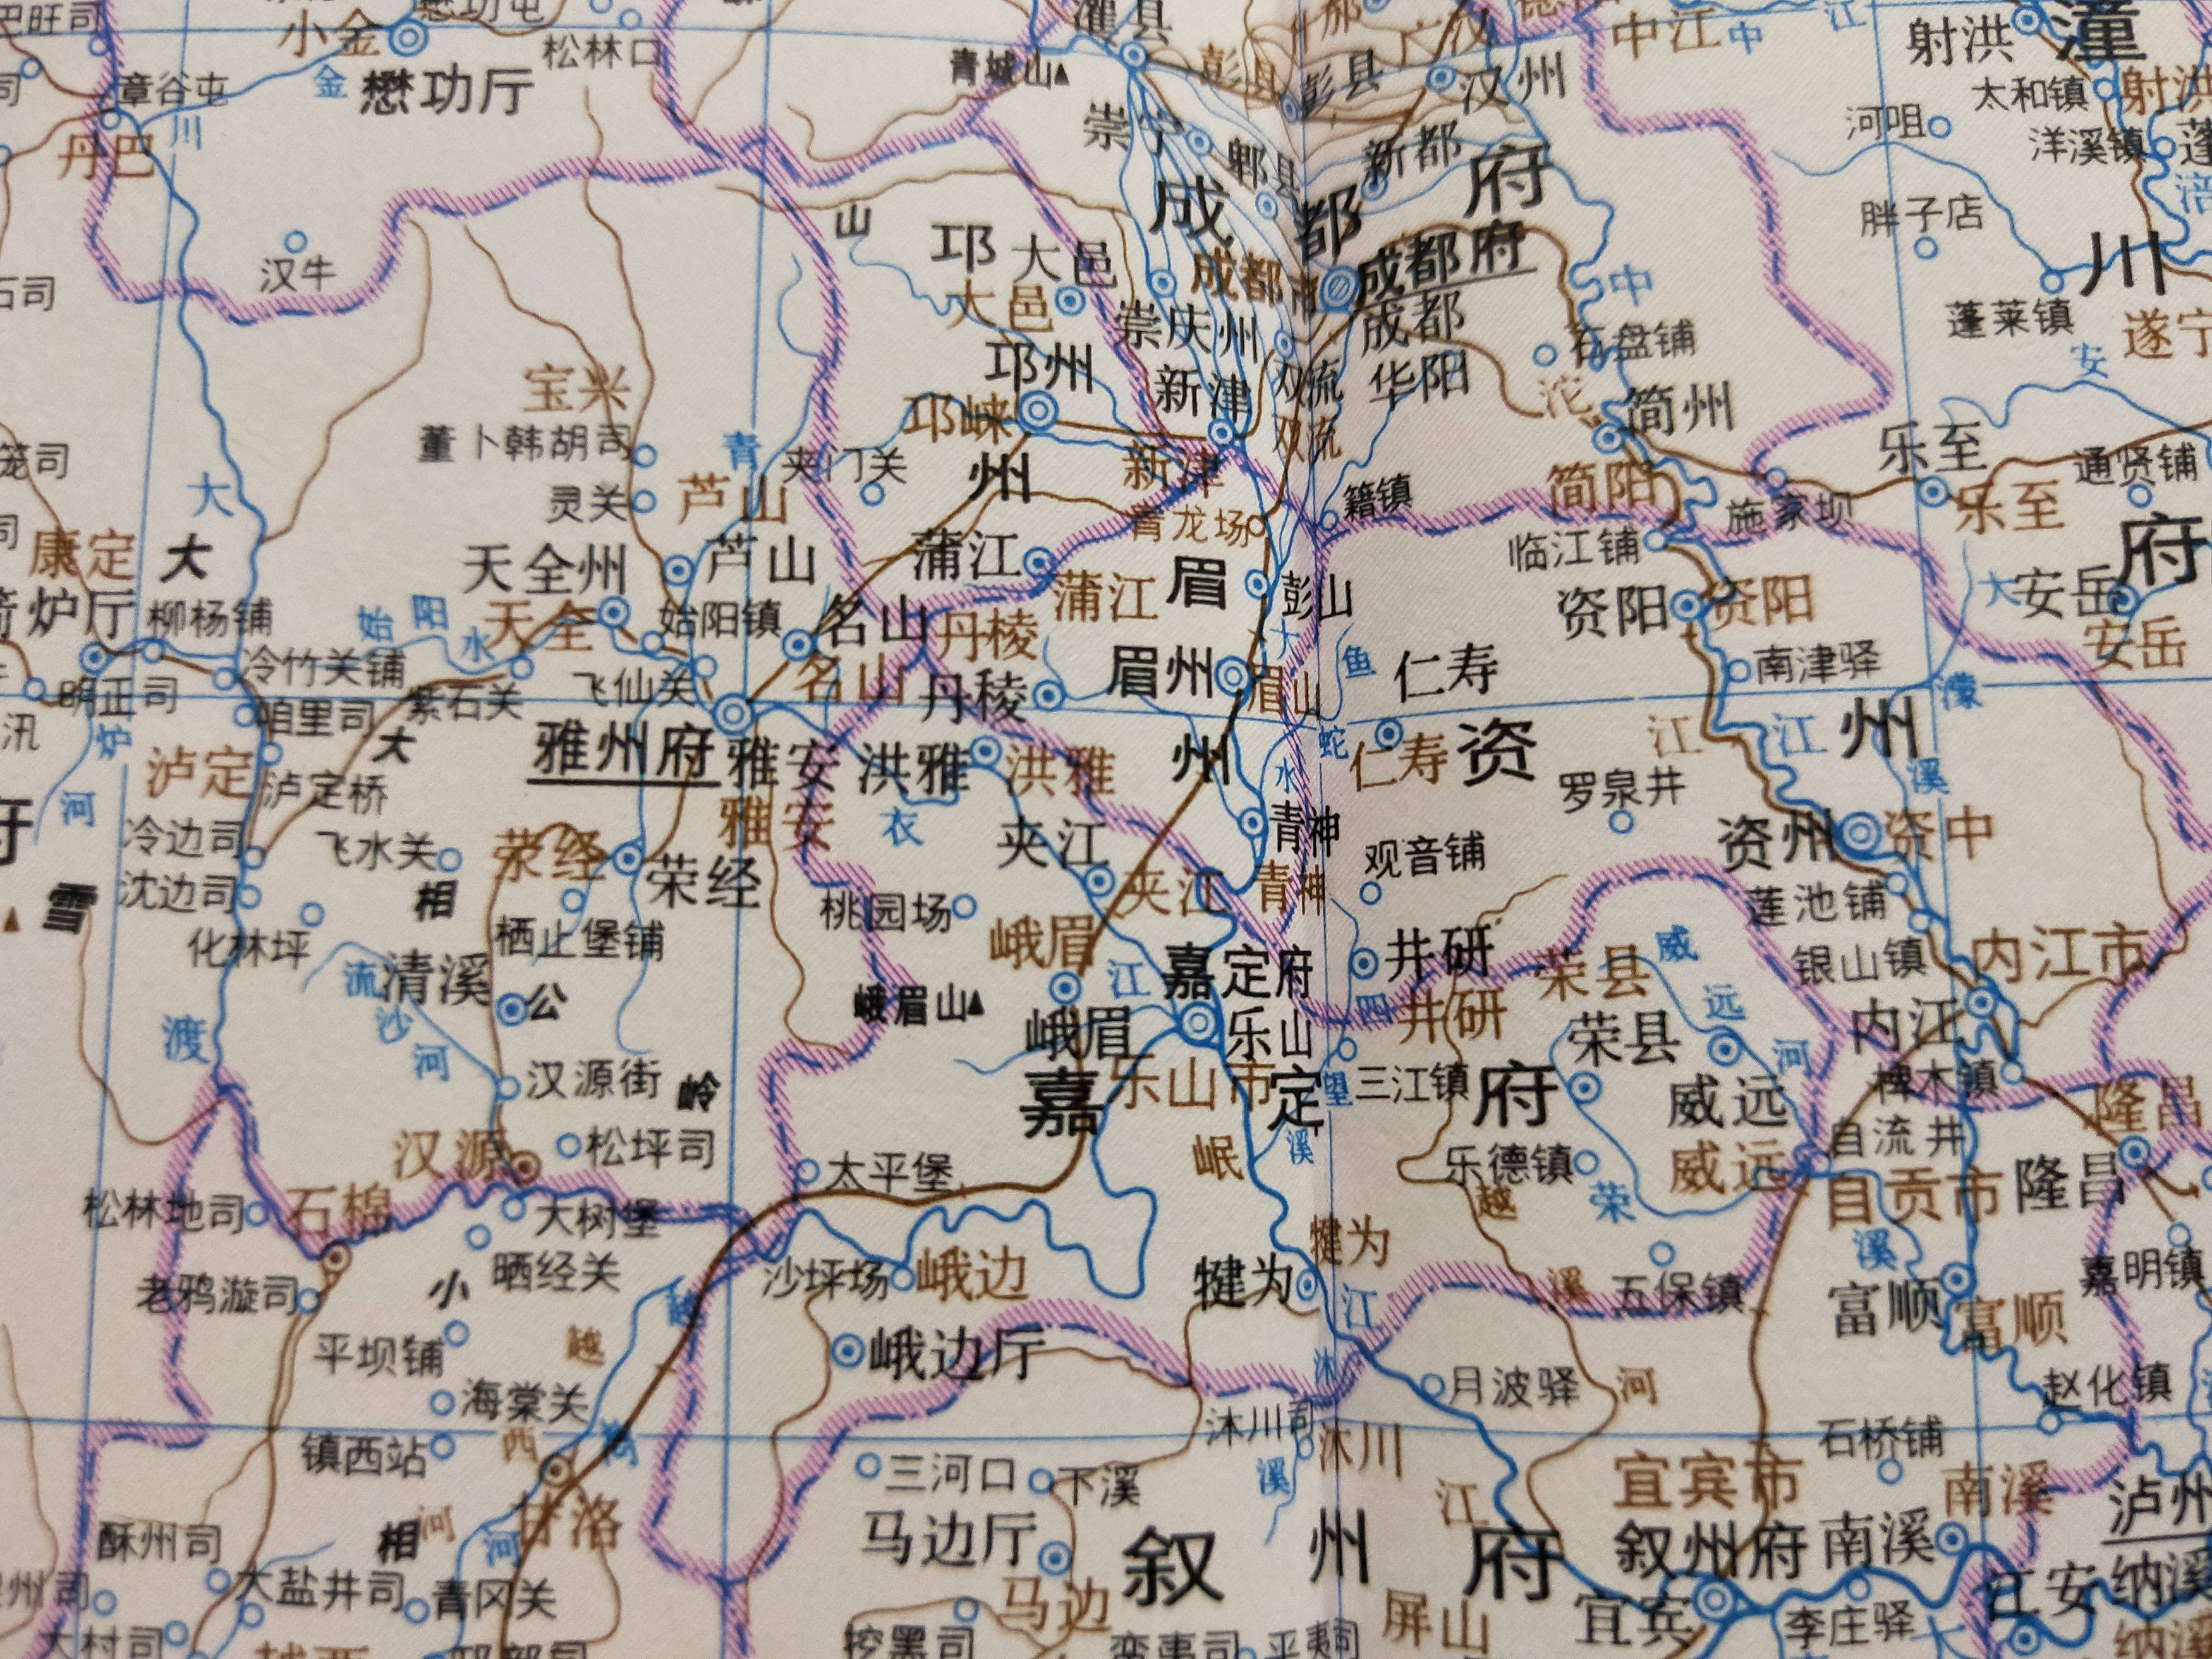 相关资料来源于《中国历史地图集》与《中国地名沿革对照表